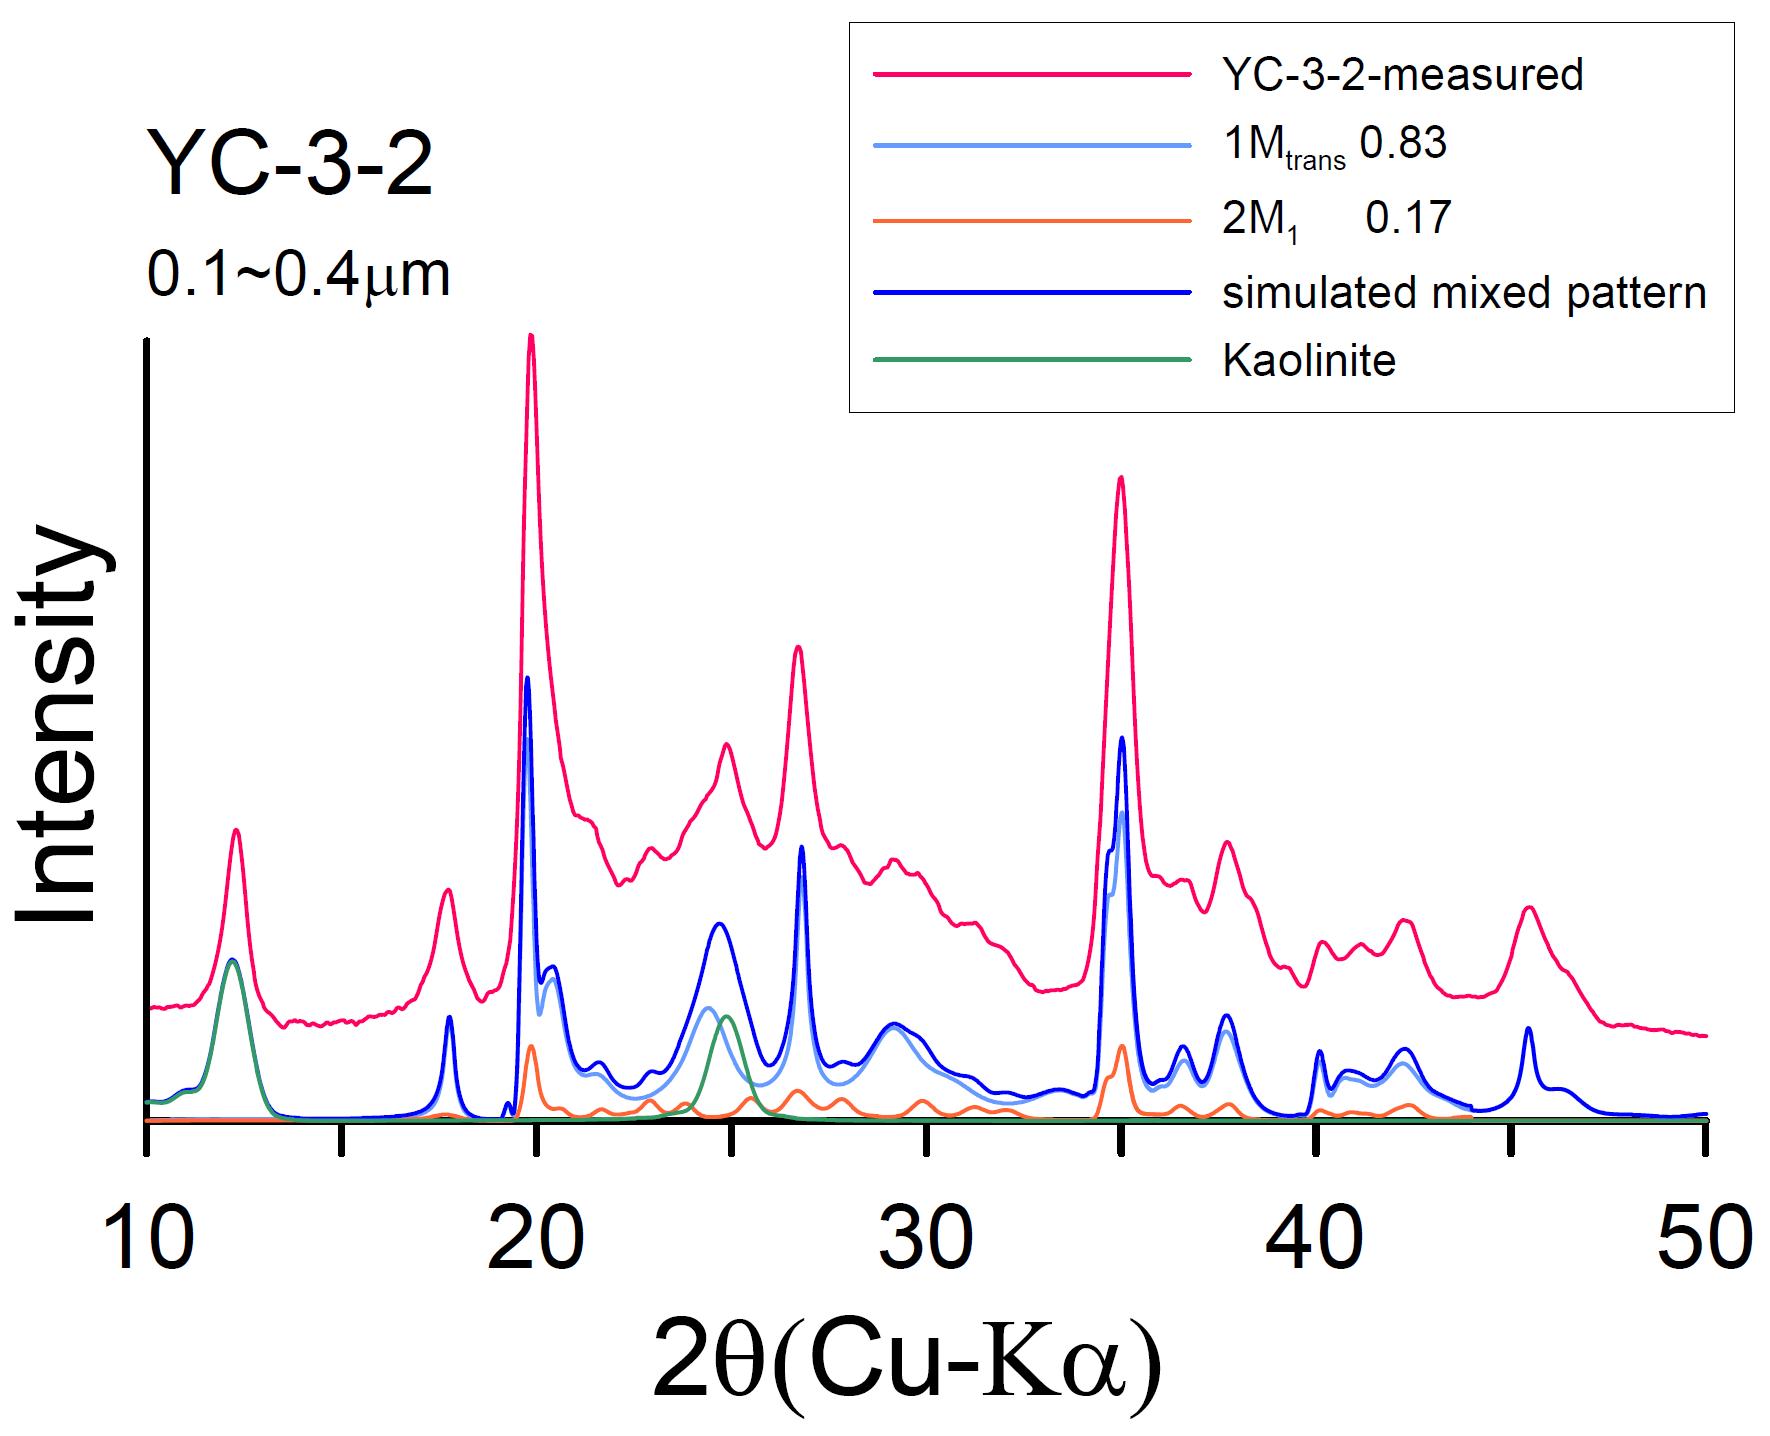 연천단층 YC-3-2(0.1∼0.4μm) XRD pattern과 1Md-2M1 simulated XRD pattern matching 결과.